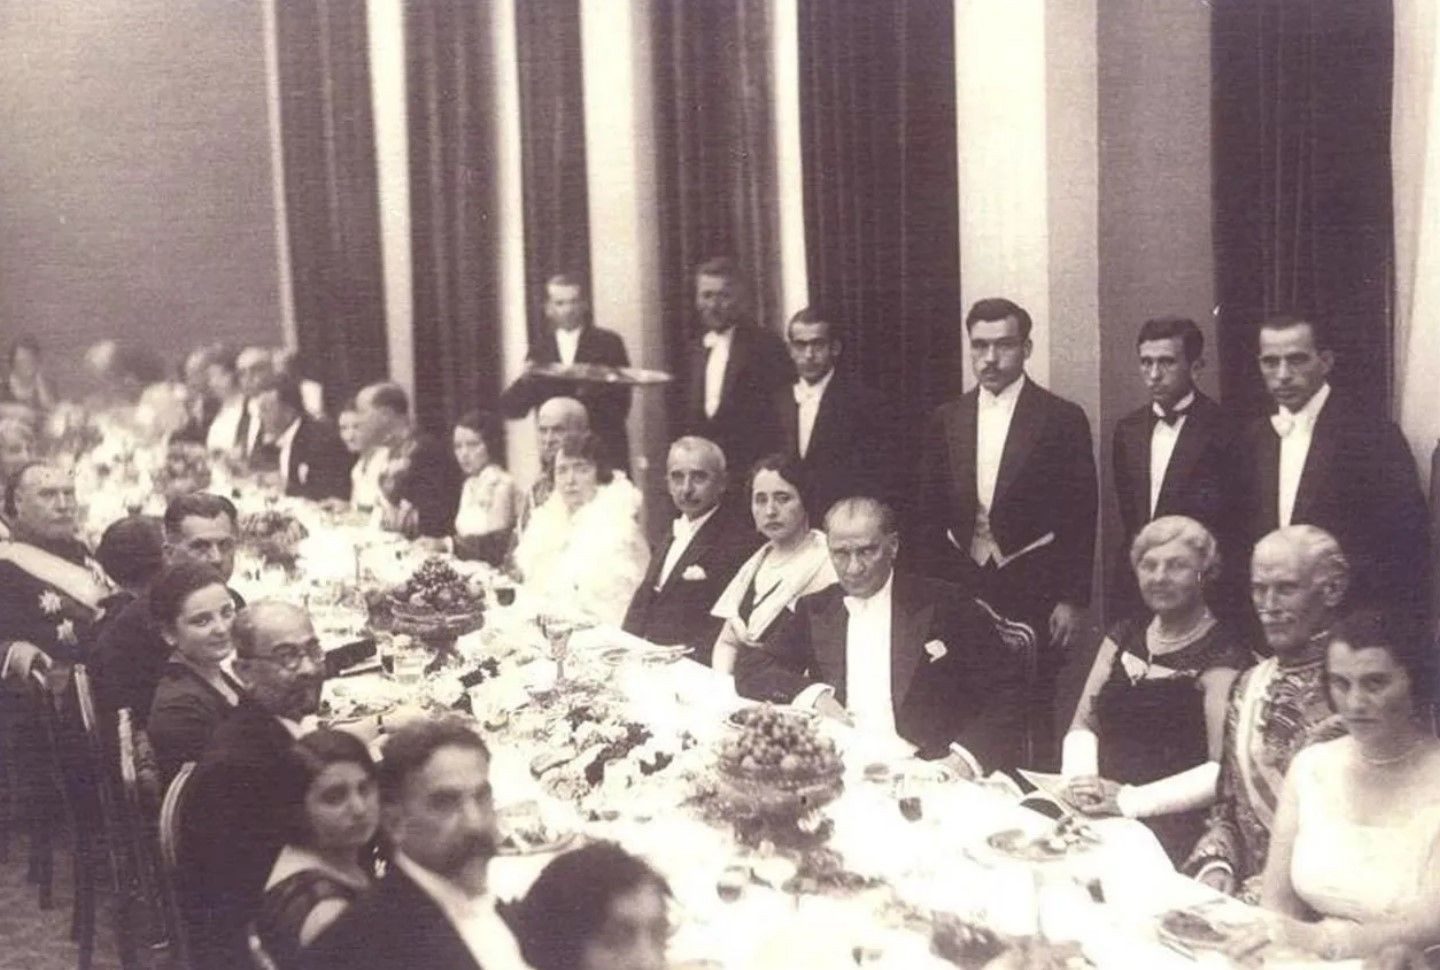 Cumhuriyetimizin kurucusu Gazi Mustafa Kemal Atatürk'ün bugüne kadar pek bilinmeyen fotoğrafları: - 5 aZduAtaturk